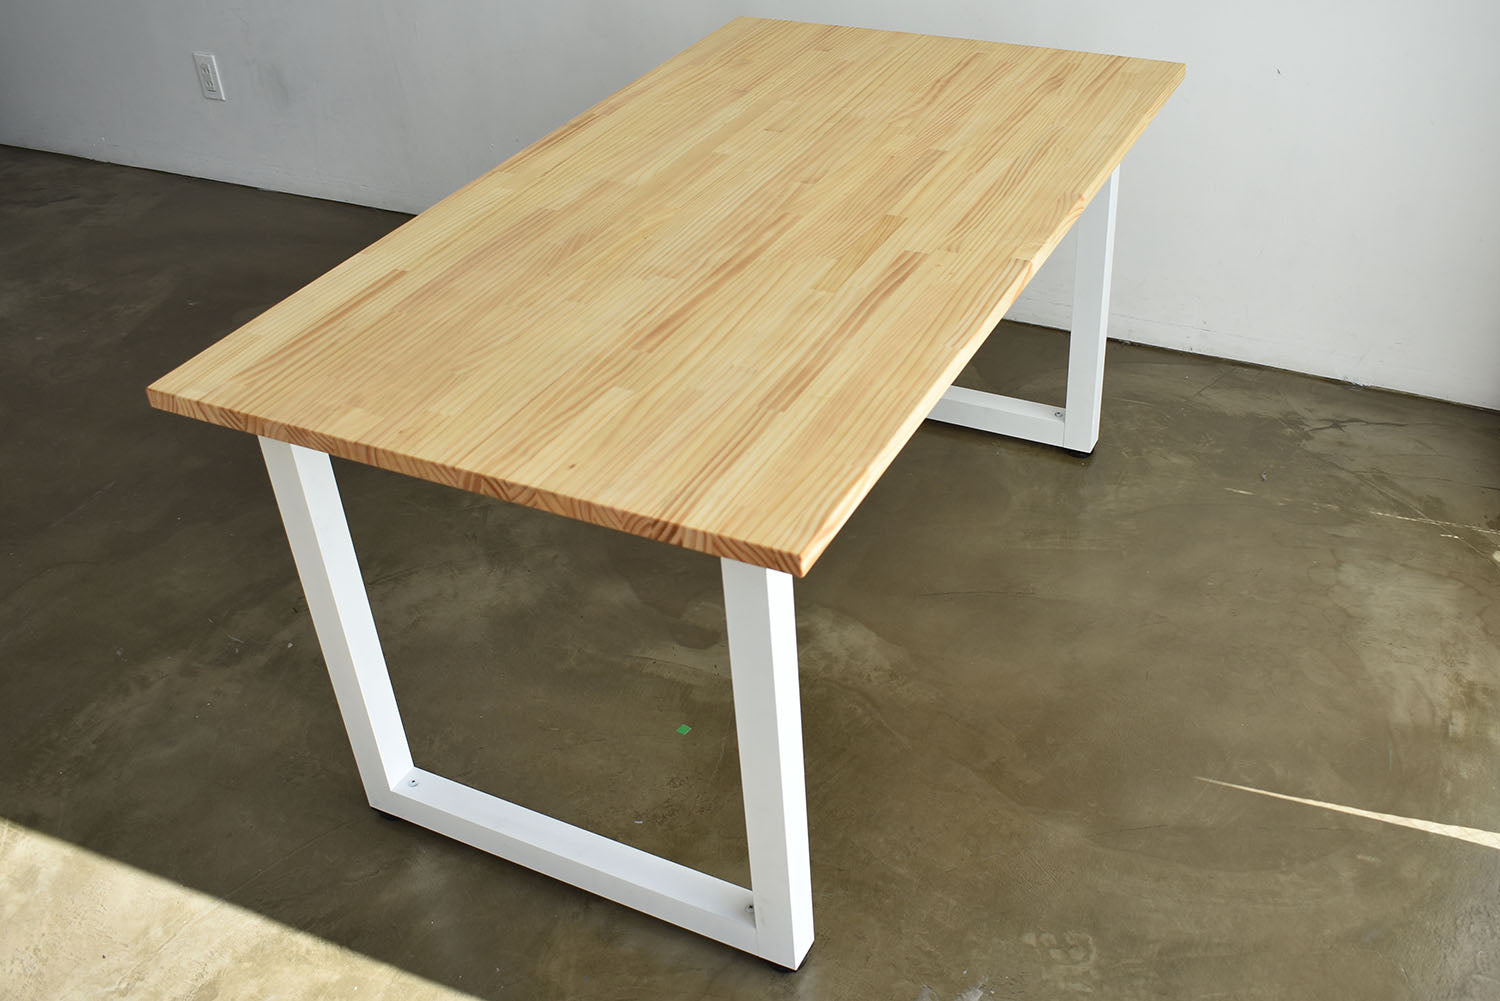 テーブル作業台アンジェリック机 テーブル 作業台 天板パイン集成材  幅130cm ナチュラル×ホワイト